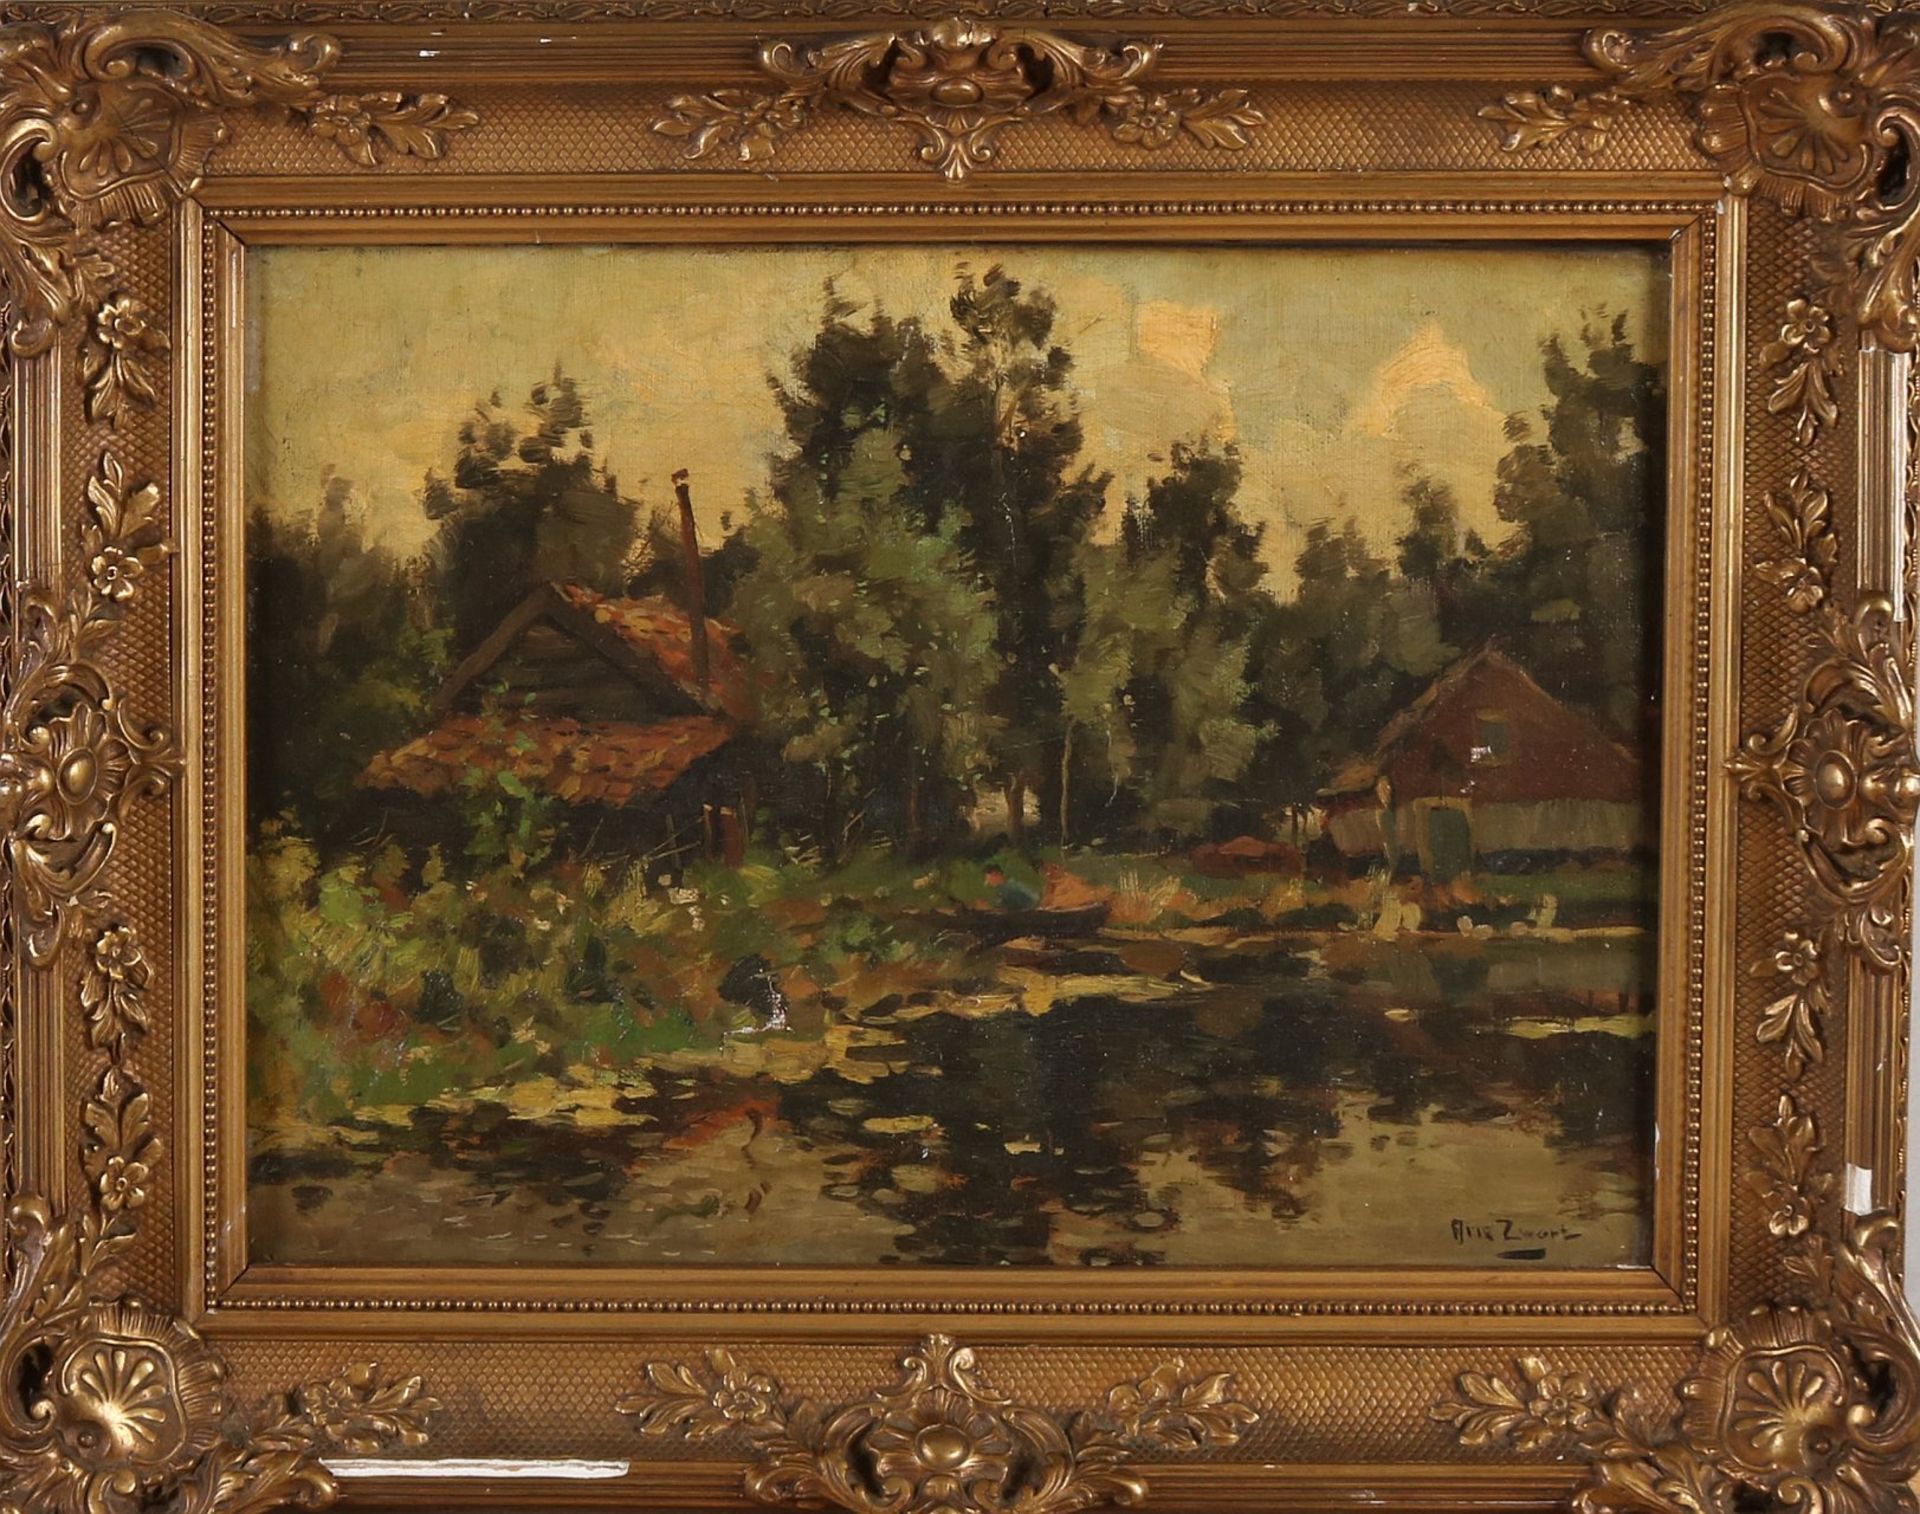 AJ Black. 1903 - 1981. Bauernhaus am Wasser. Öl auf Leinen. Abmessungen: H 30 x B 40 cm. In gu